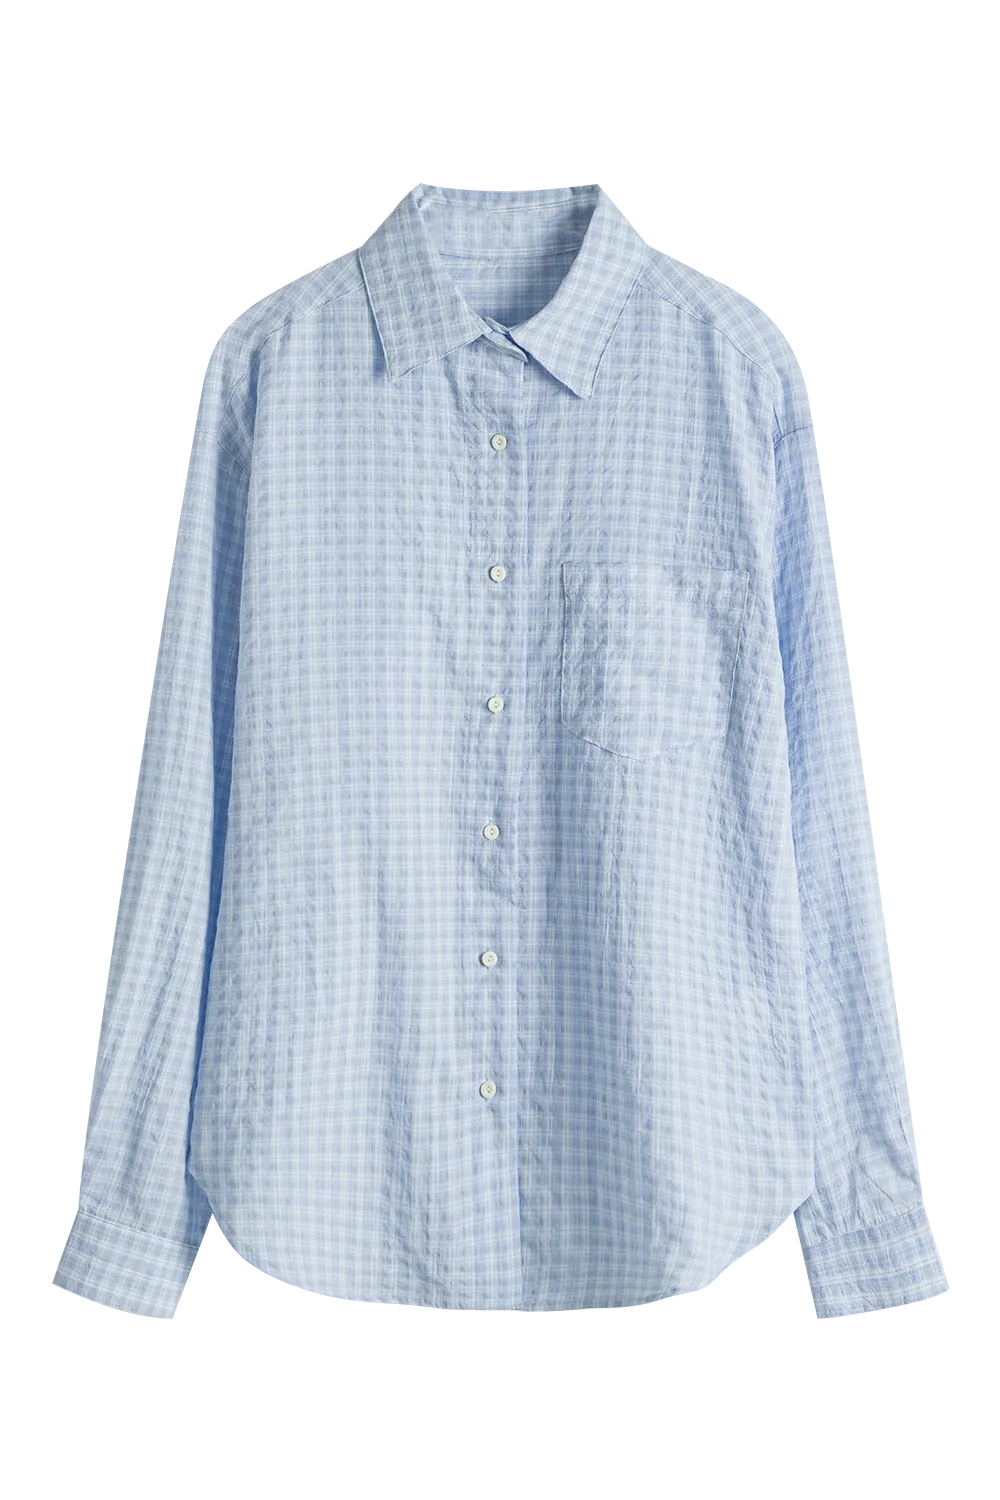 Checkered Linen Shirt for a Fresh Summer Look